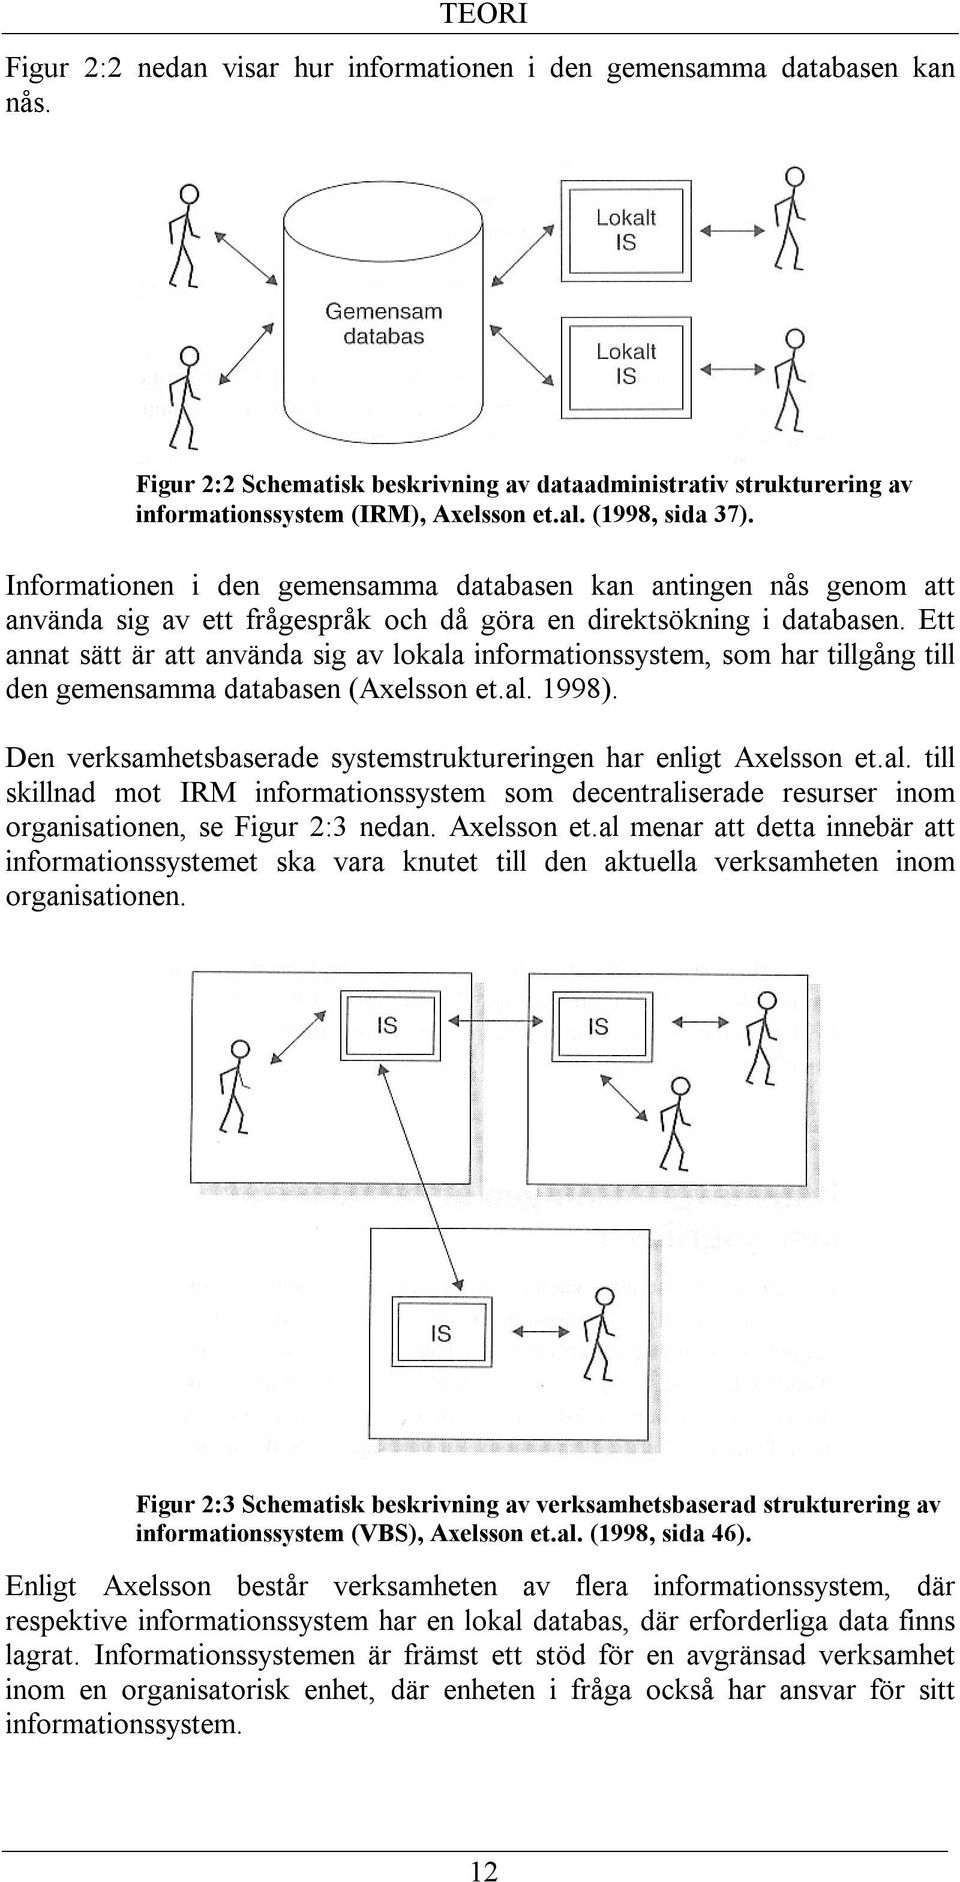 Ett annat sätt är att använda sig av lokala informationssystem, som har tillgång till den gemensamma databasen (Axelsson et.al. 1998).